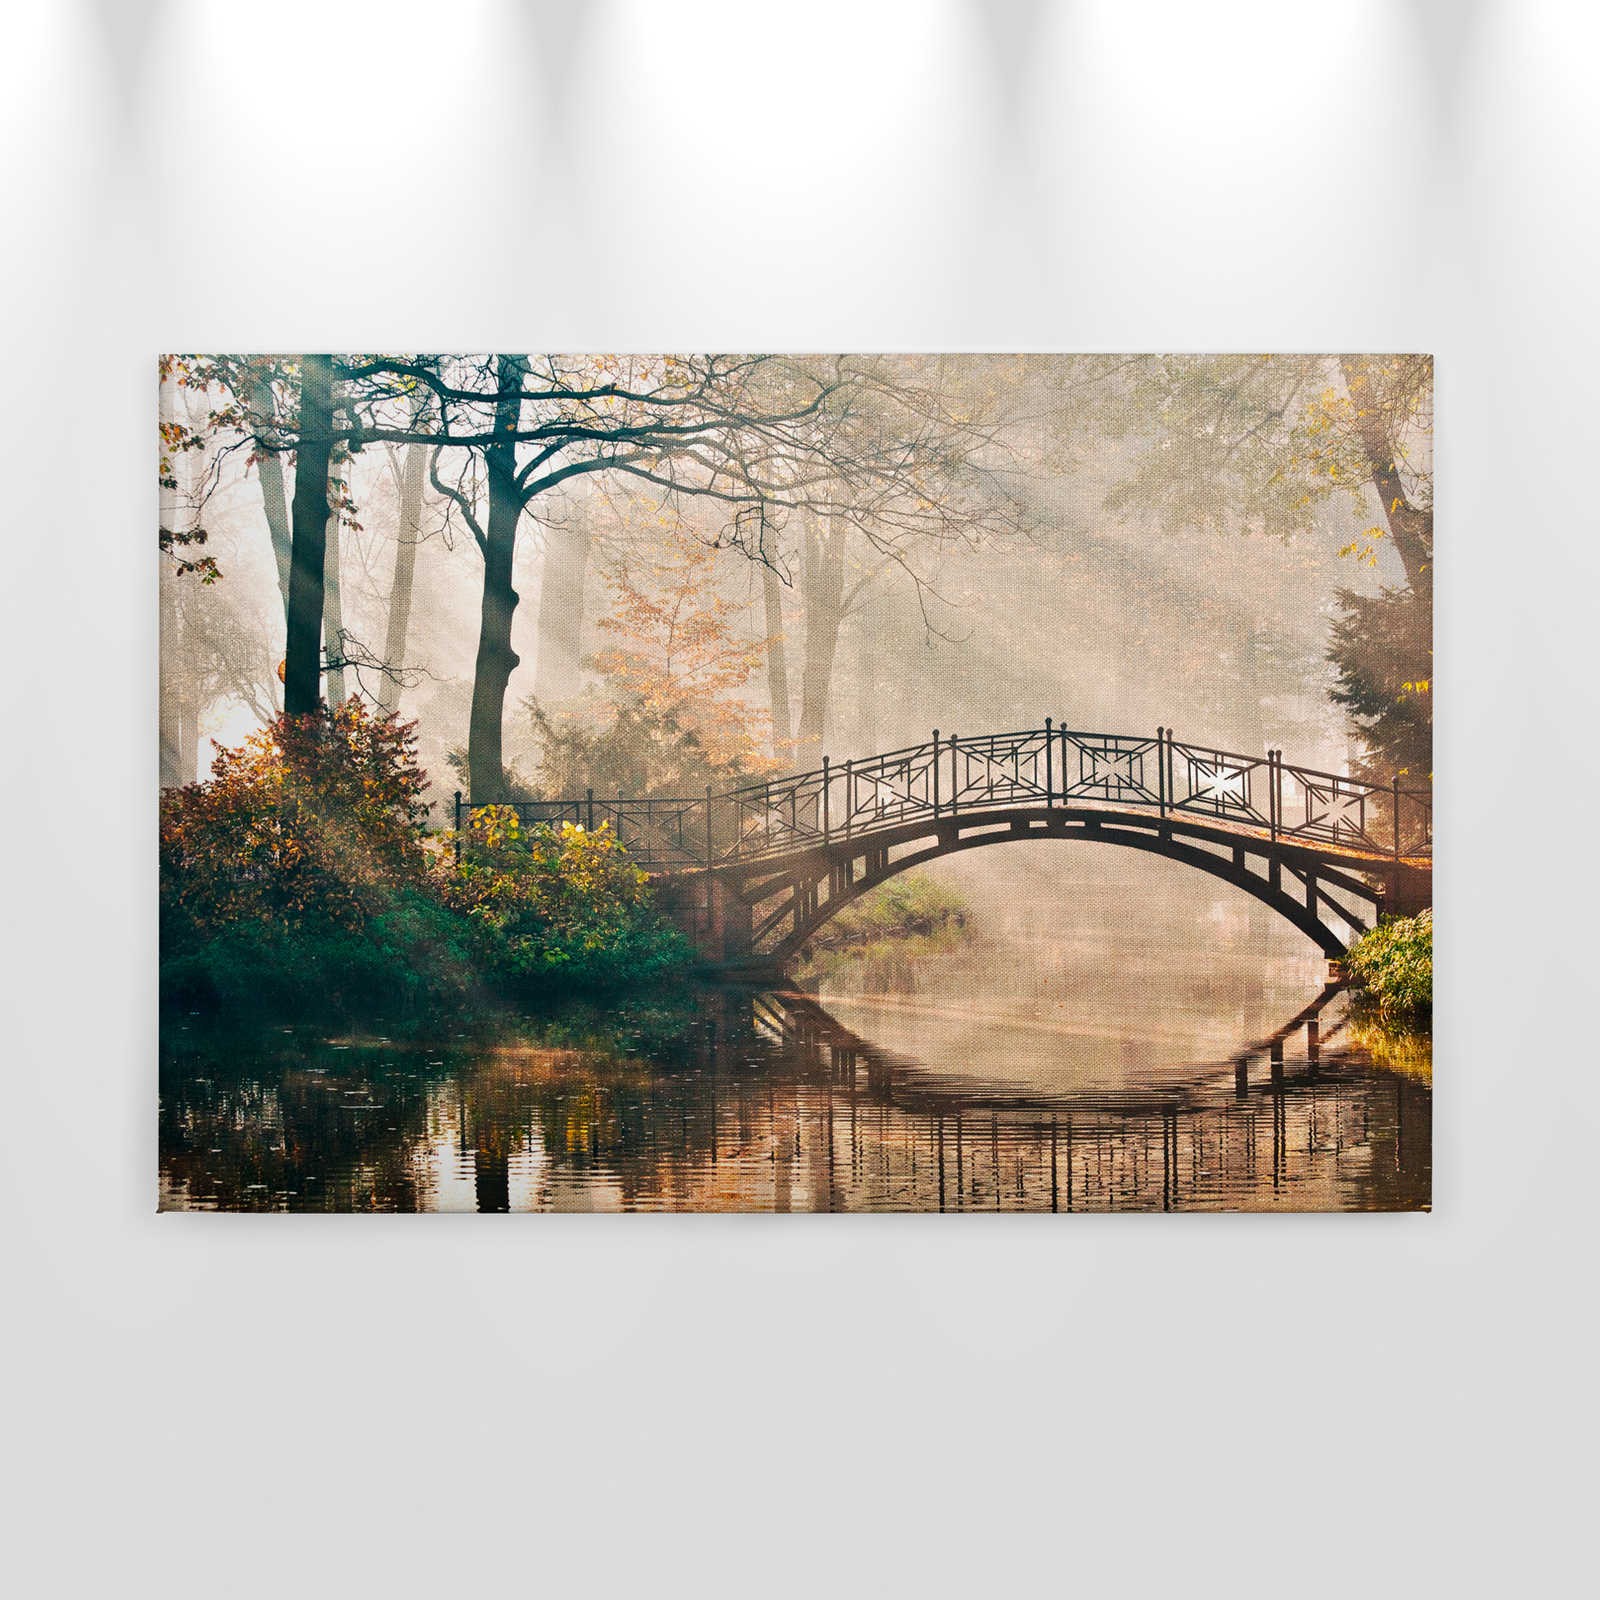             Leinwand mit Brücke über einen Fluss im Laubwald – 0,90 m x 0,60 m
        